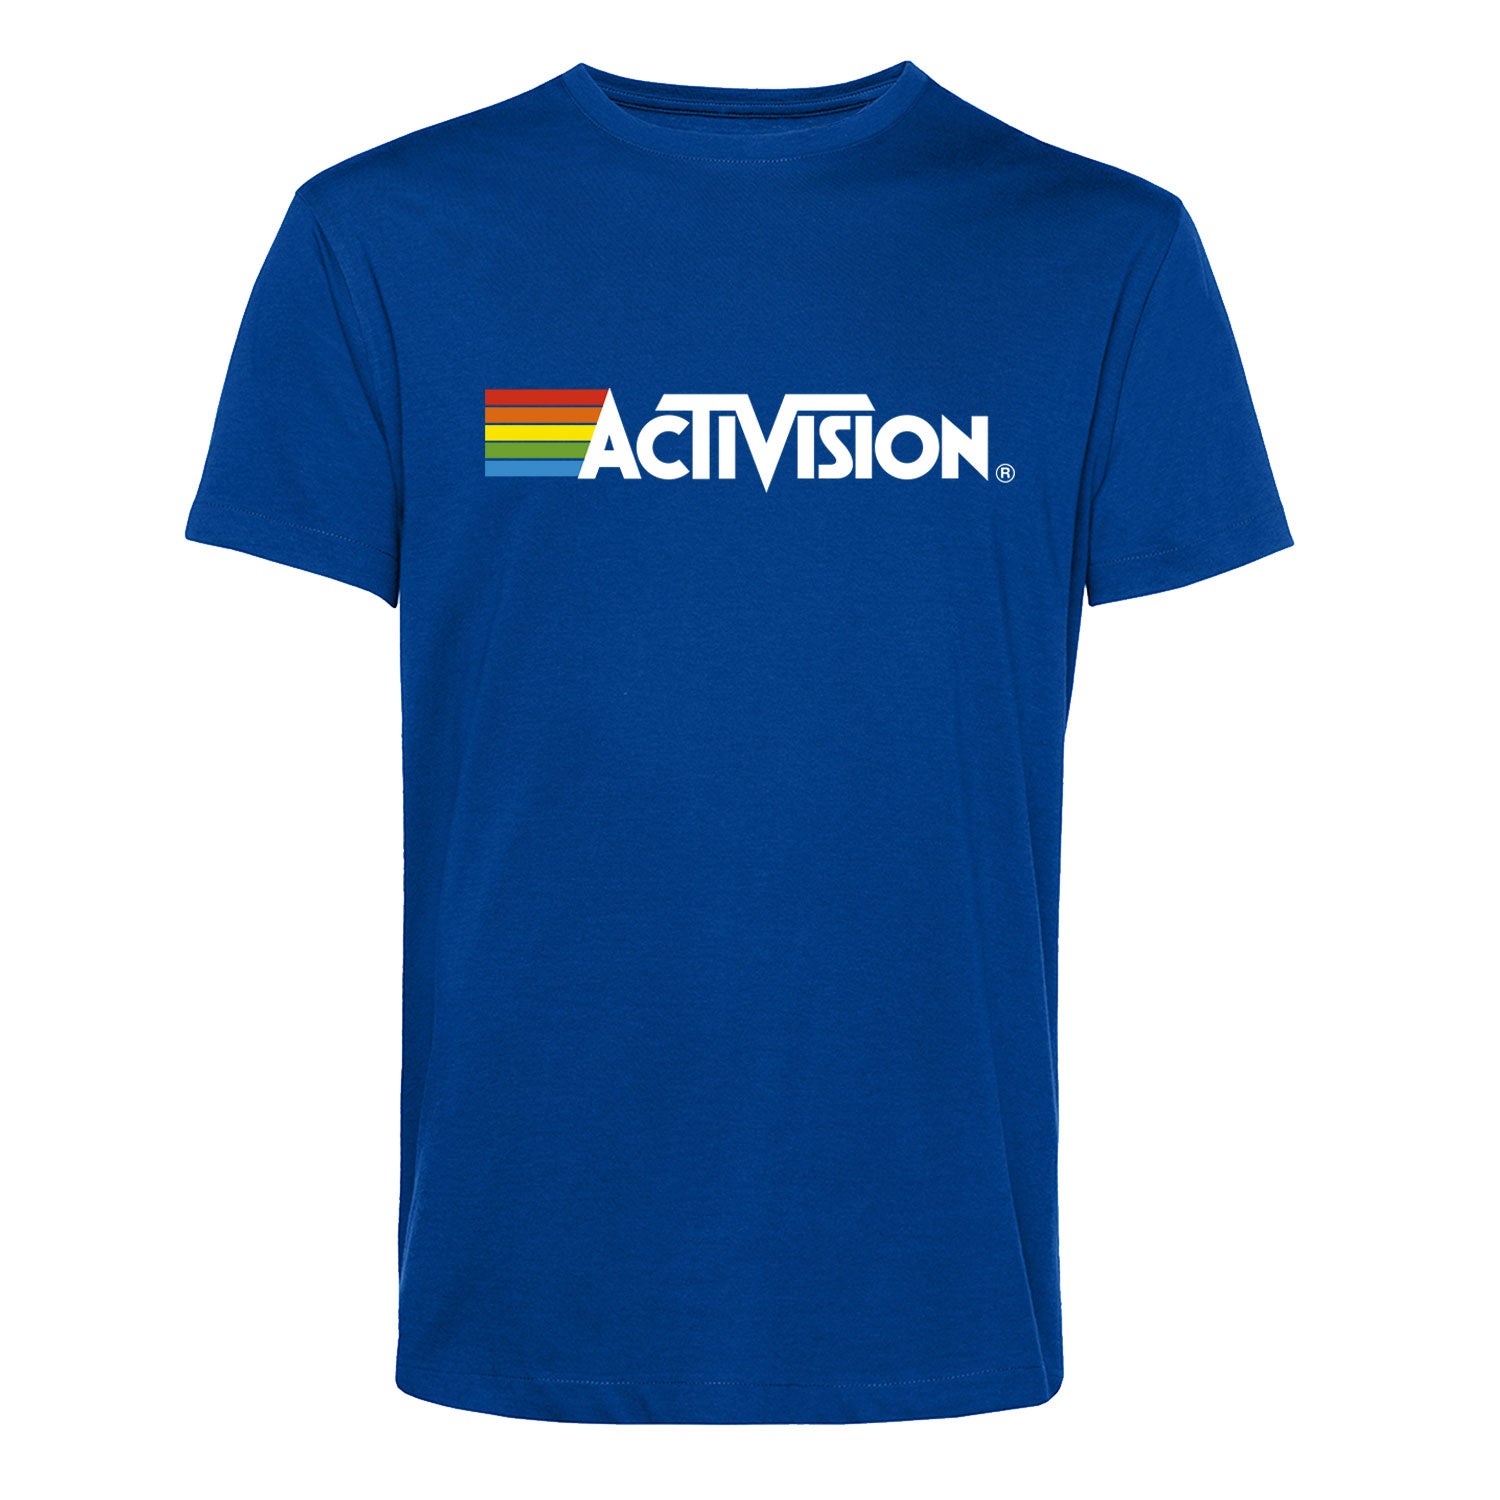 Activision Men's T-Shirt, Blue Unisex Style